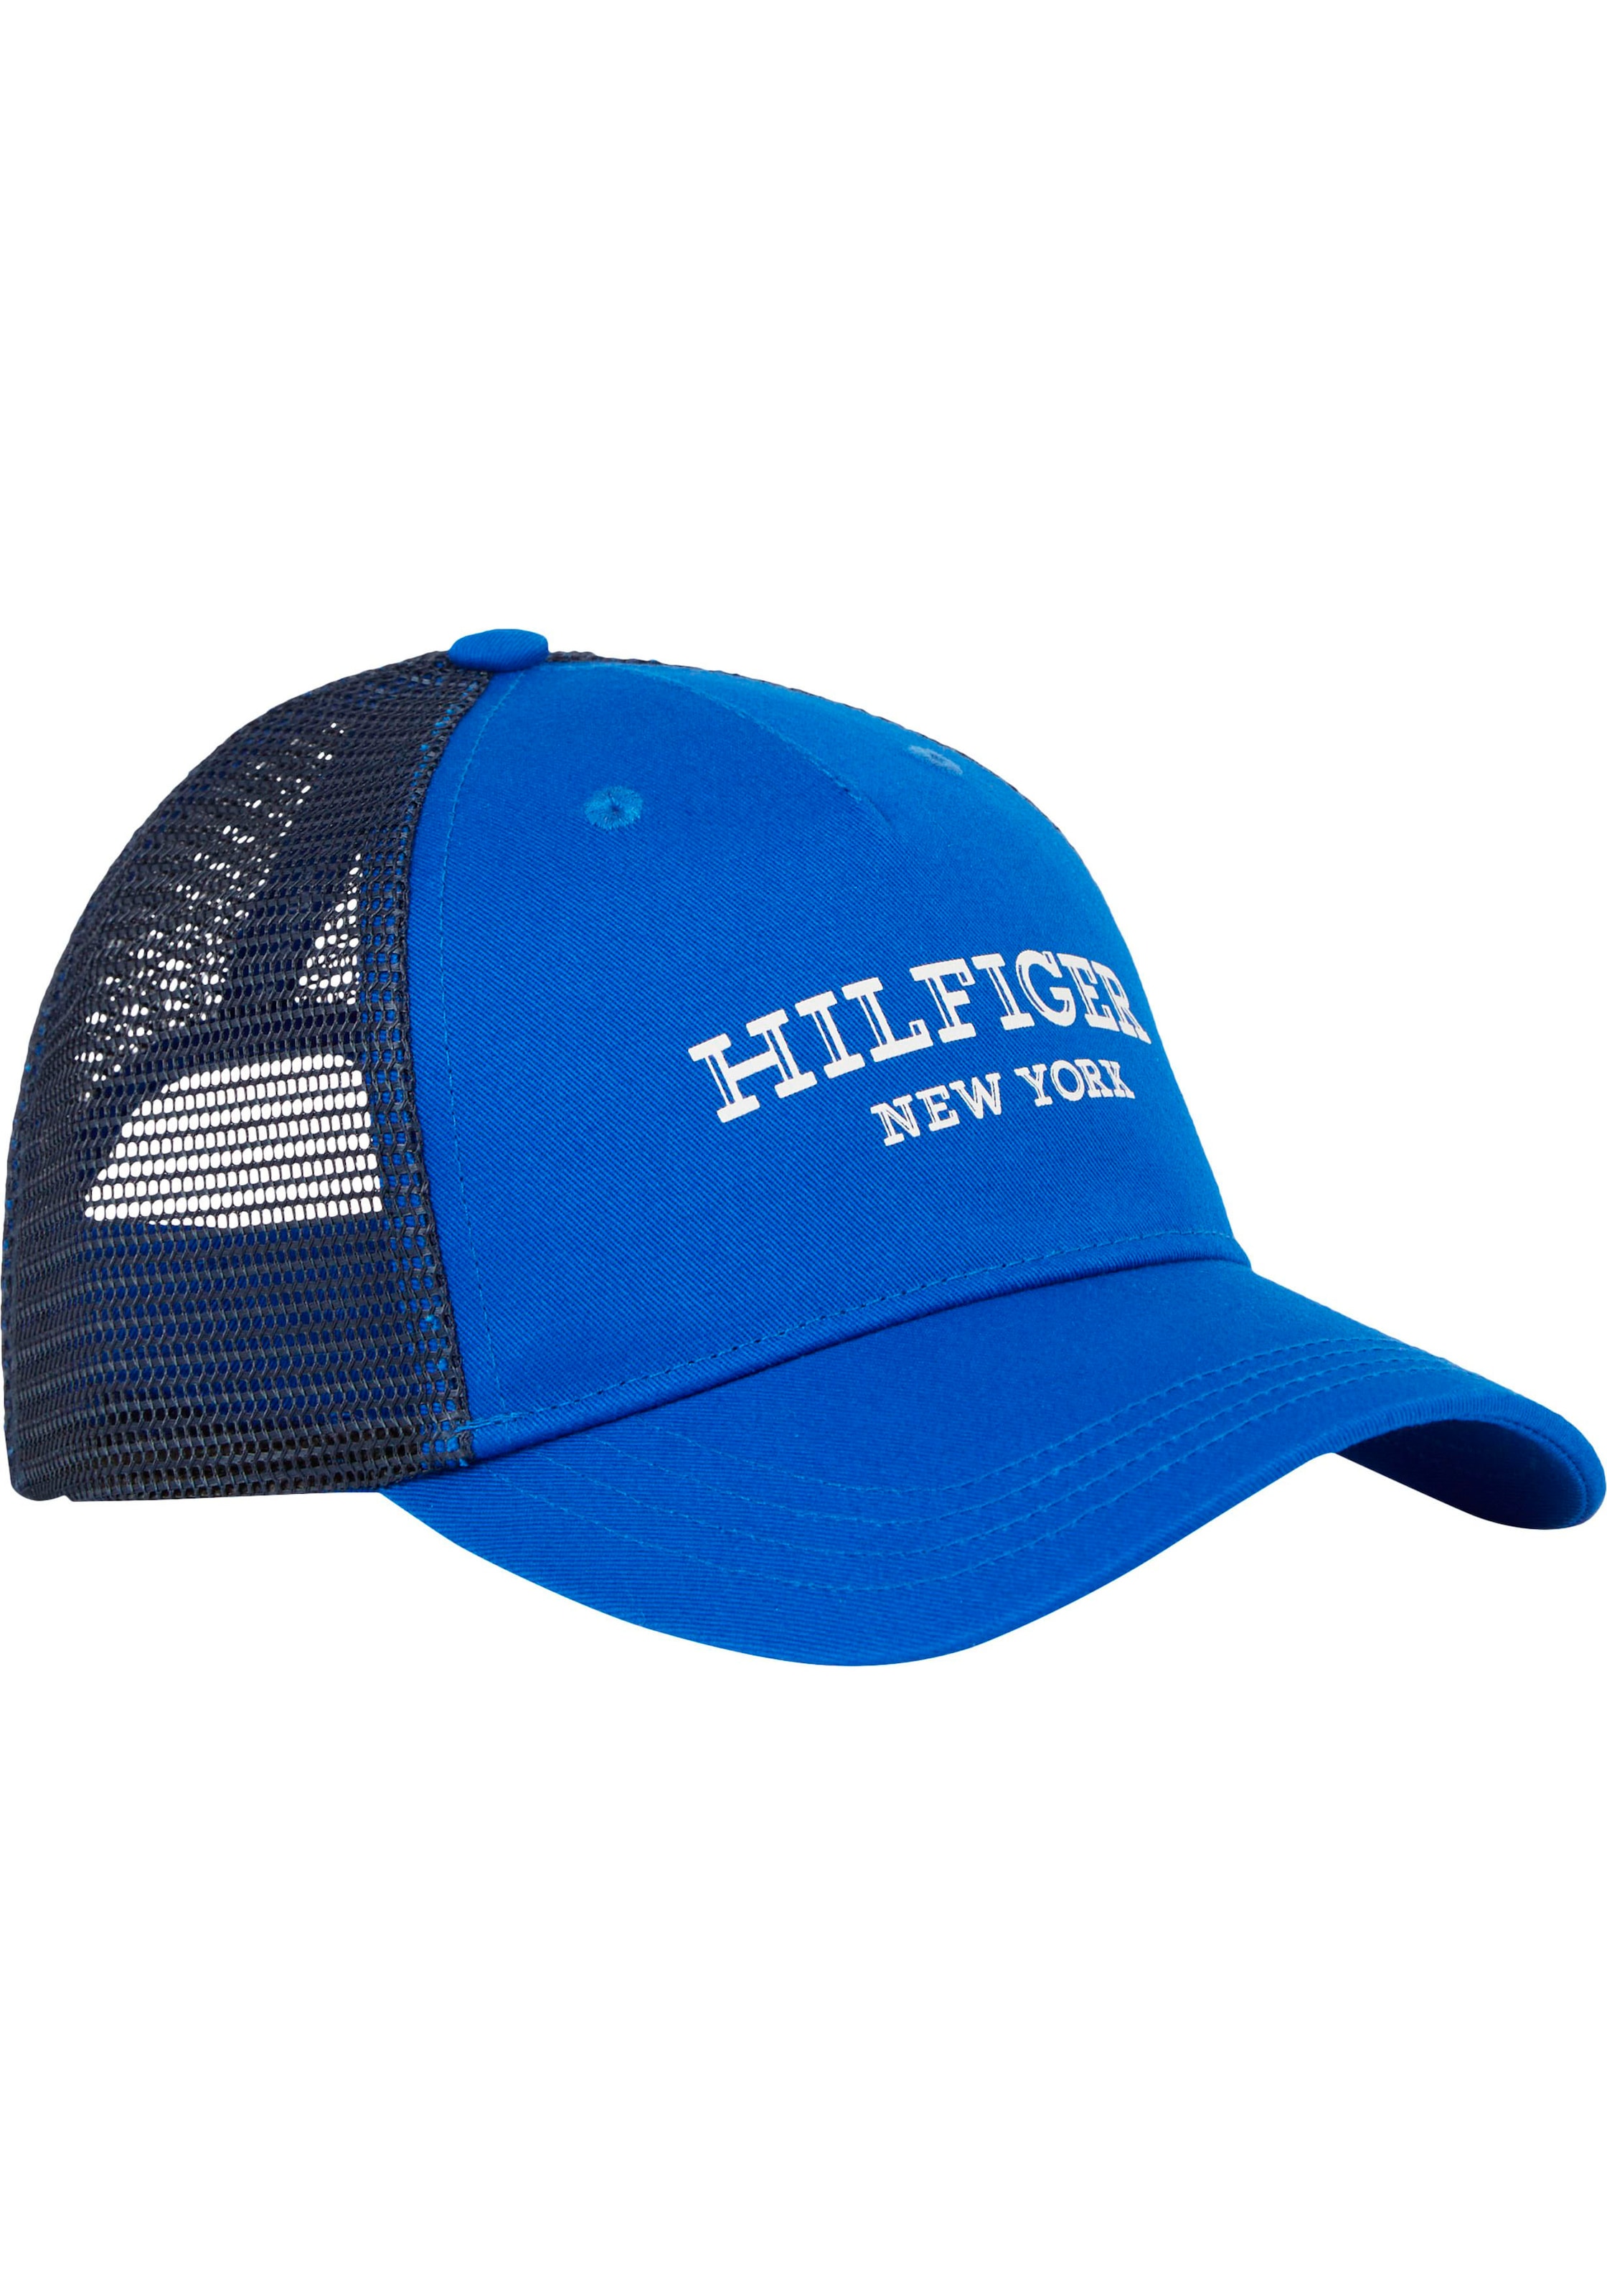 Tommy Hilfiger Baseball Cap »MONOTYPE CAP«, Kinder Kids Junior MiniMe,mit Netzeinsatz